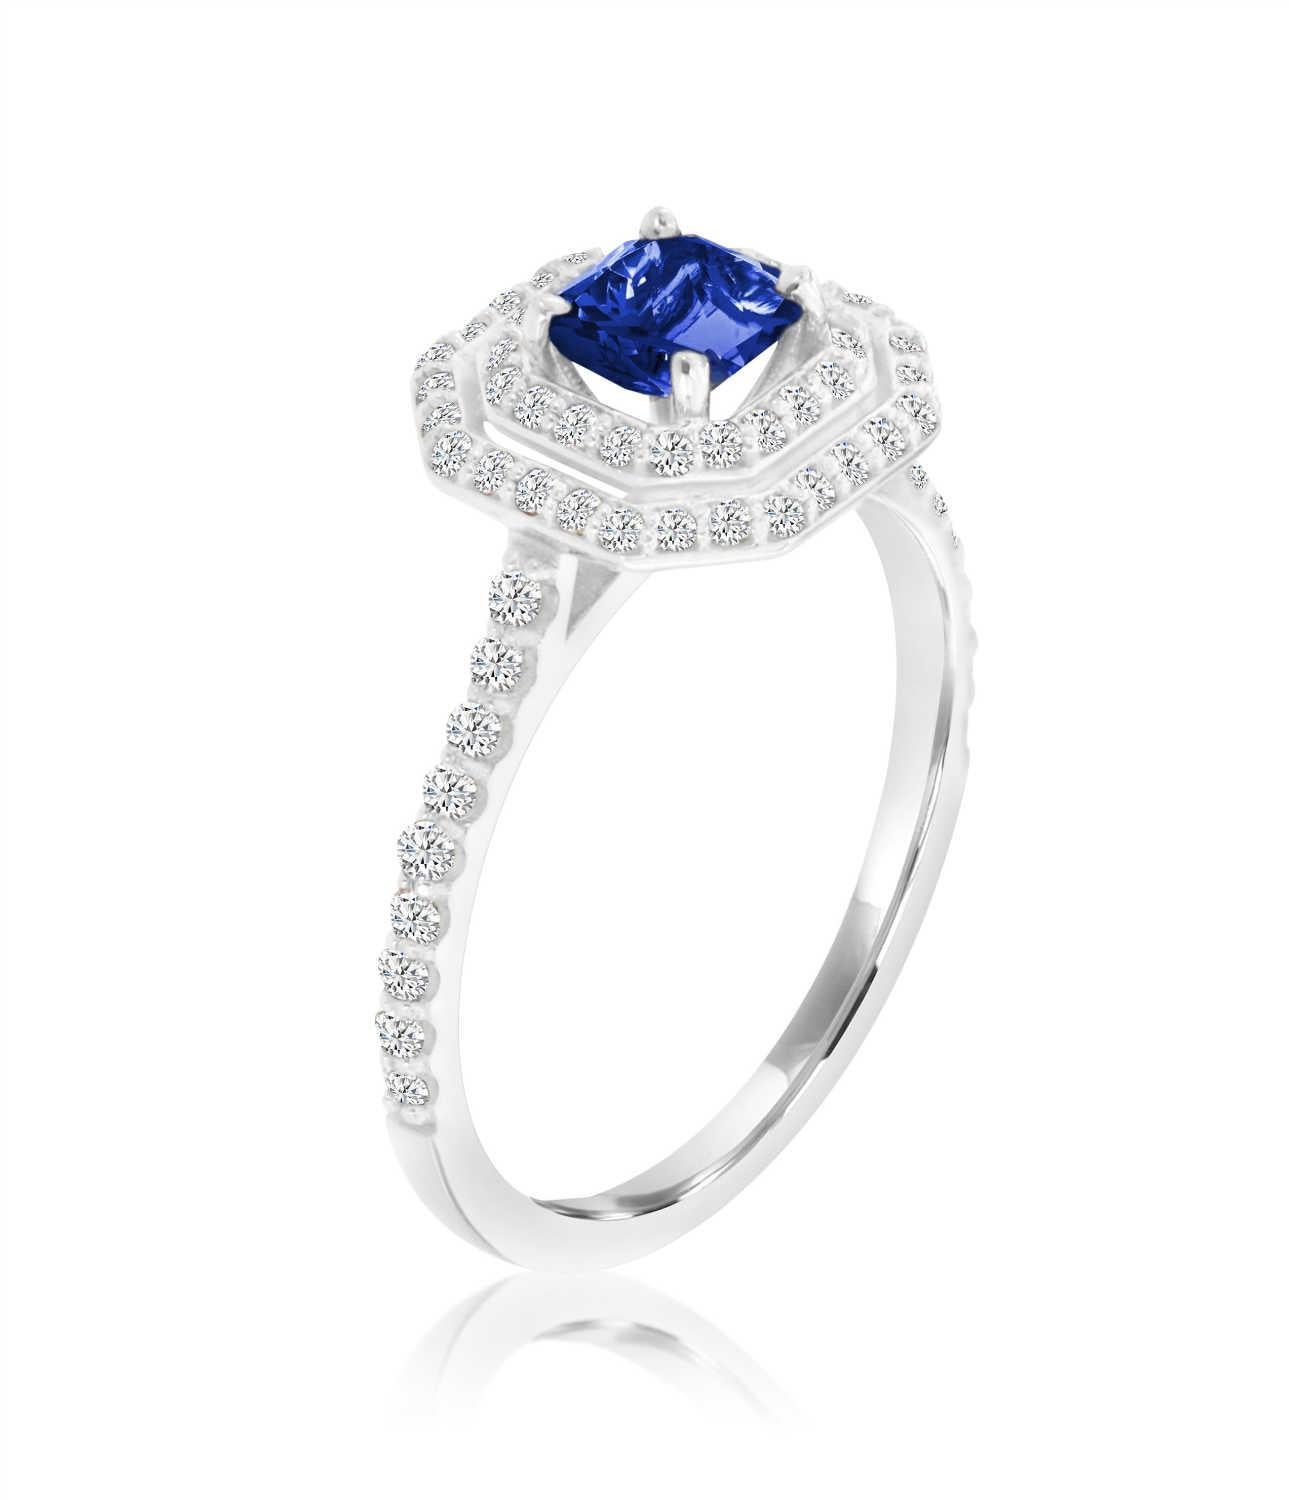 Cette délicate bague présente un saphir bleu sri-lankais de 0,62 carat de taille Asscher entouré d'un double halo de diamants ronds de taille brillant. Un feston de diamants sertis en micro-pointes ajoute un effet éblouissant. Découvrez la